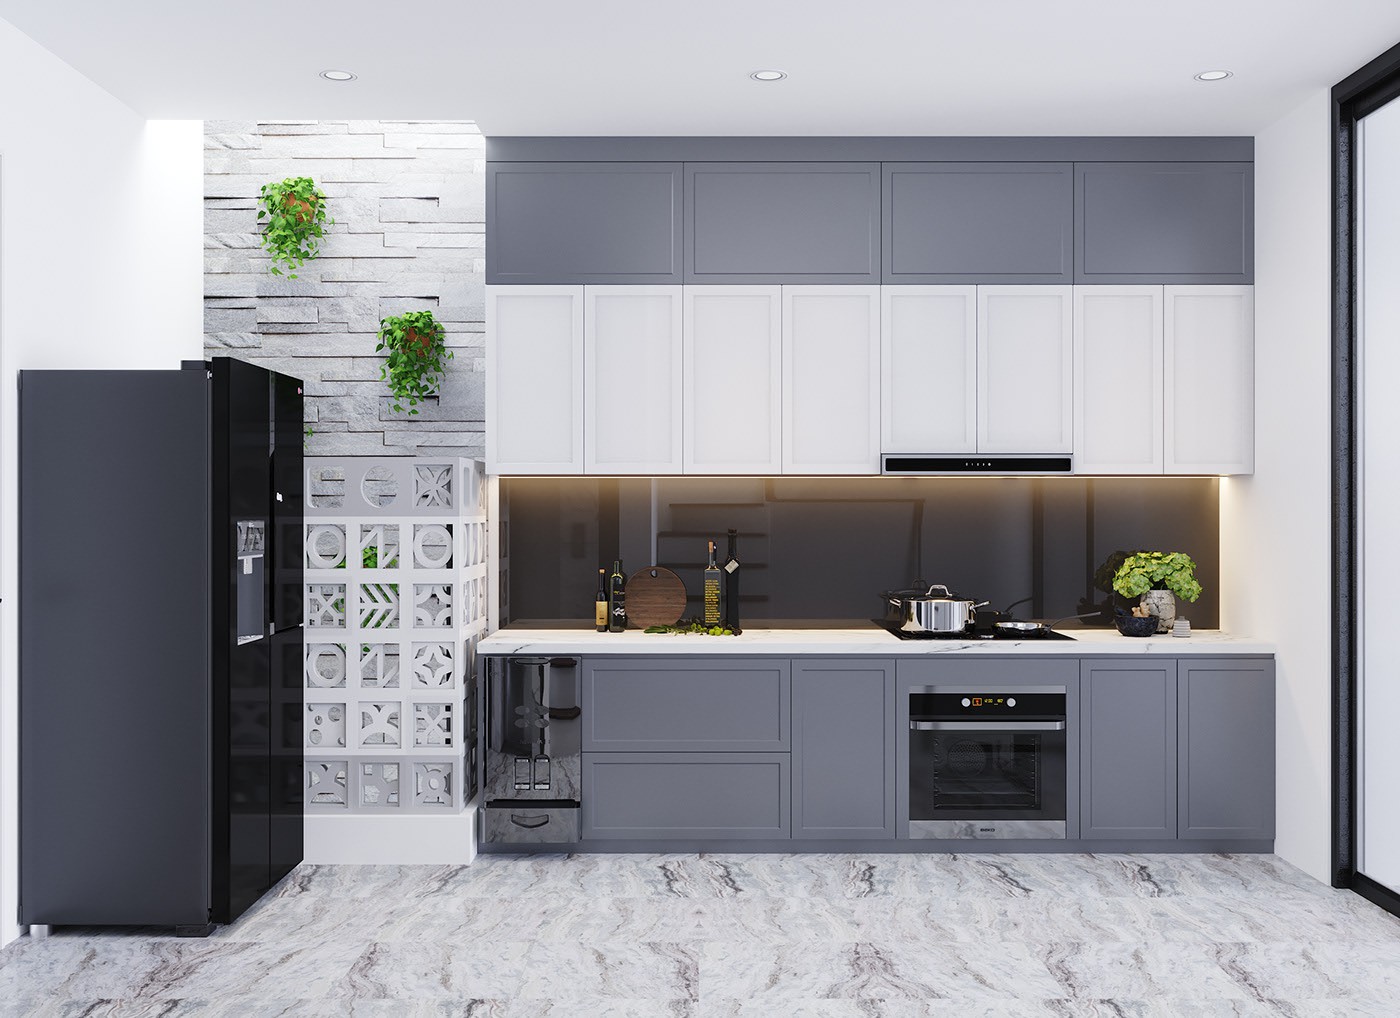 Hệ tủ bếp hình chữ I màu xám - trắng chủ đạo được thiết kế vừa vặn với diện tích phòng, hài hòa với tổng thể không gian.